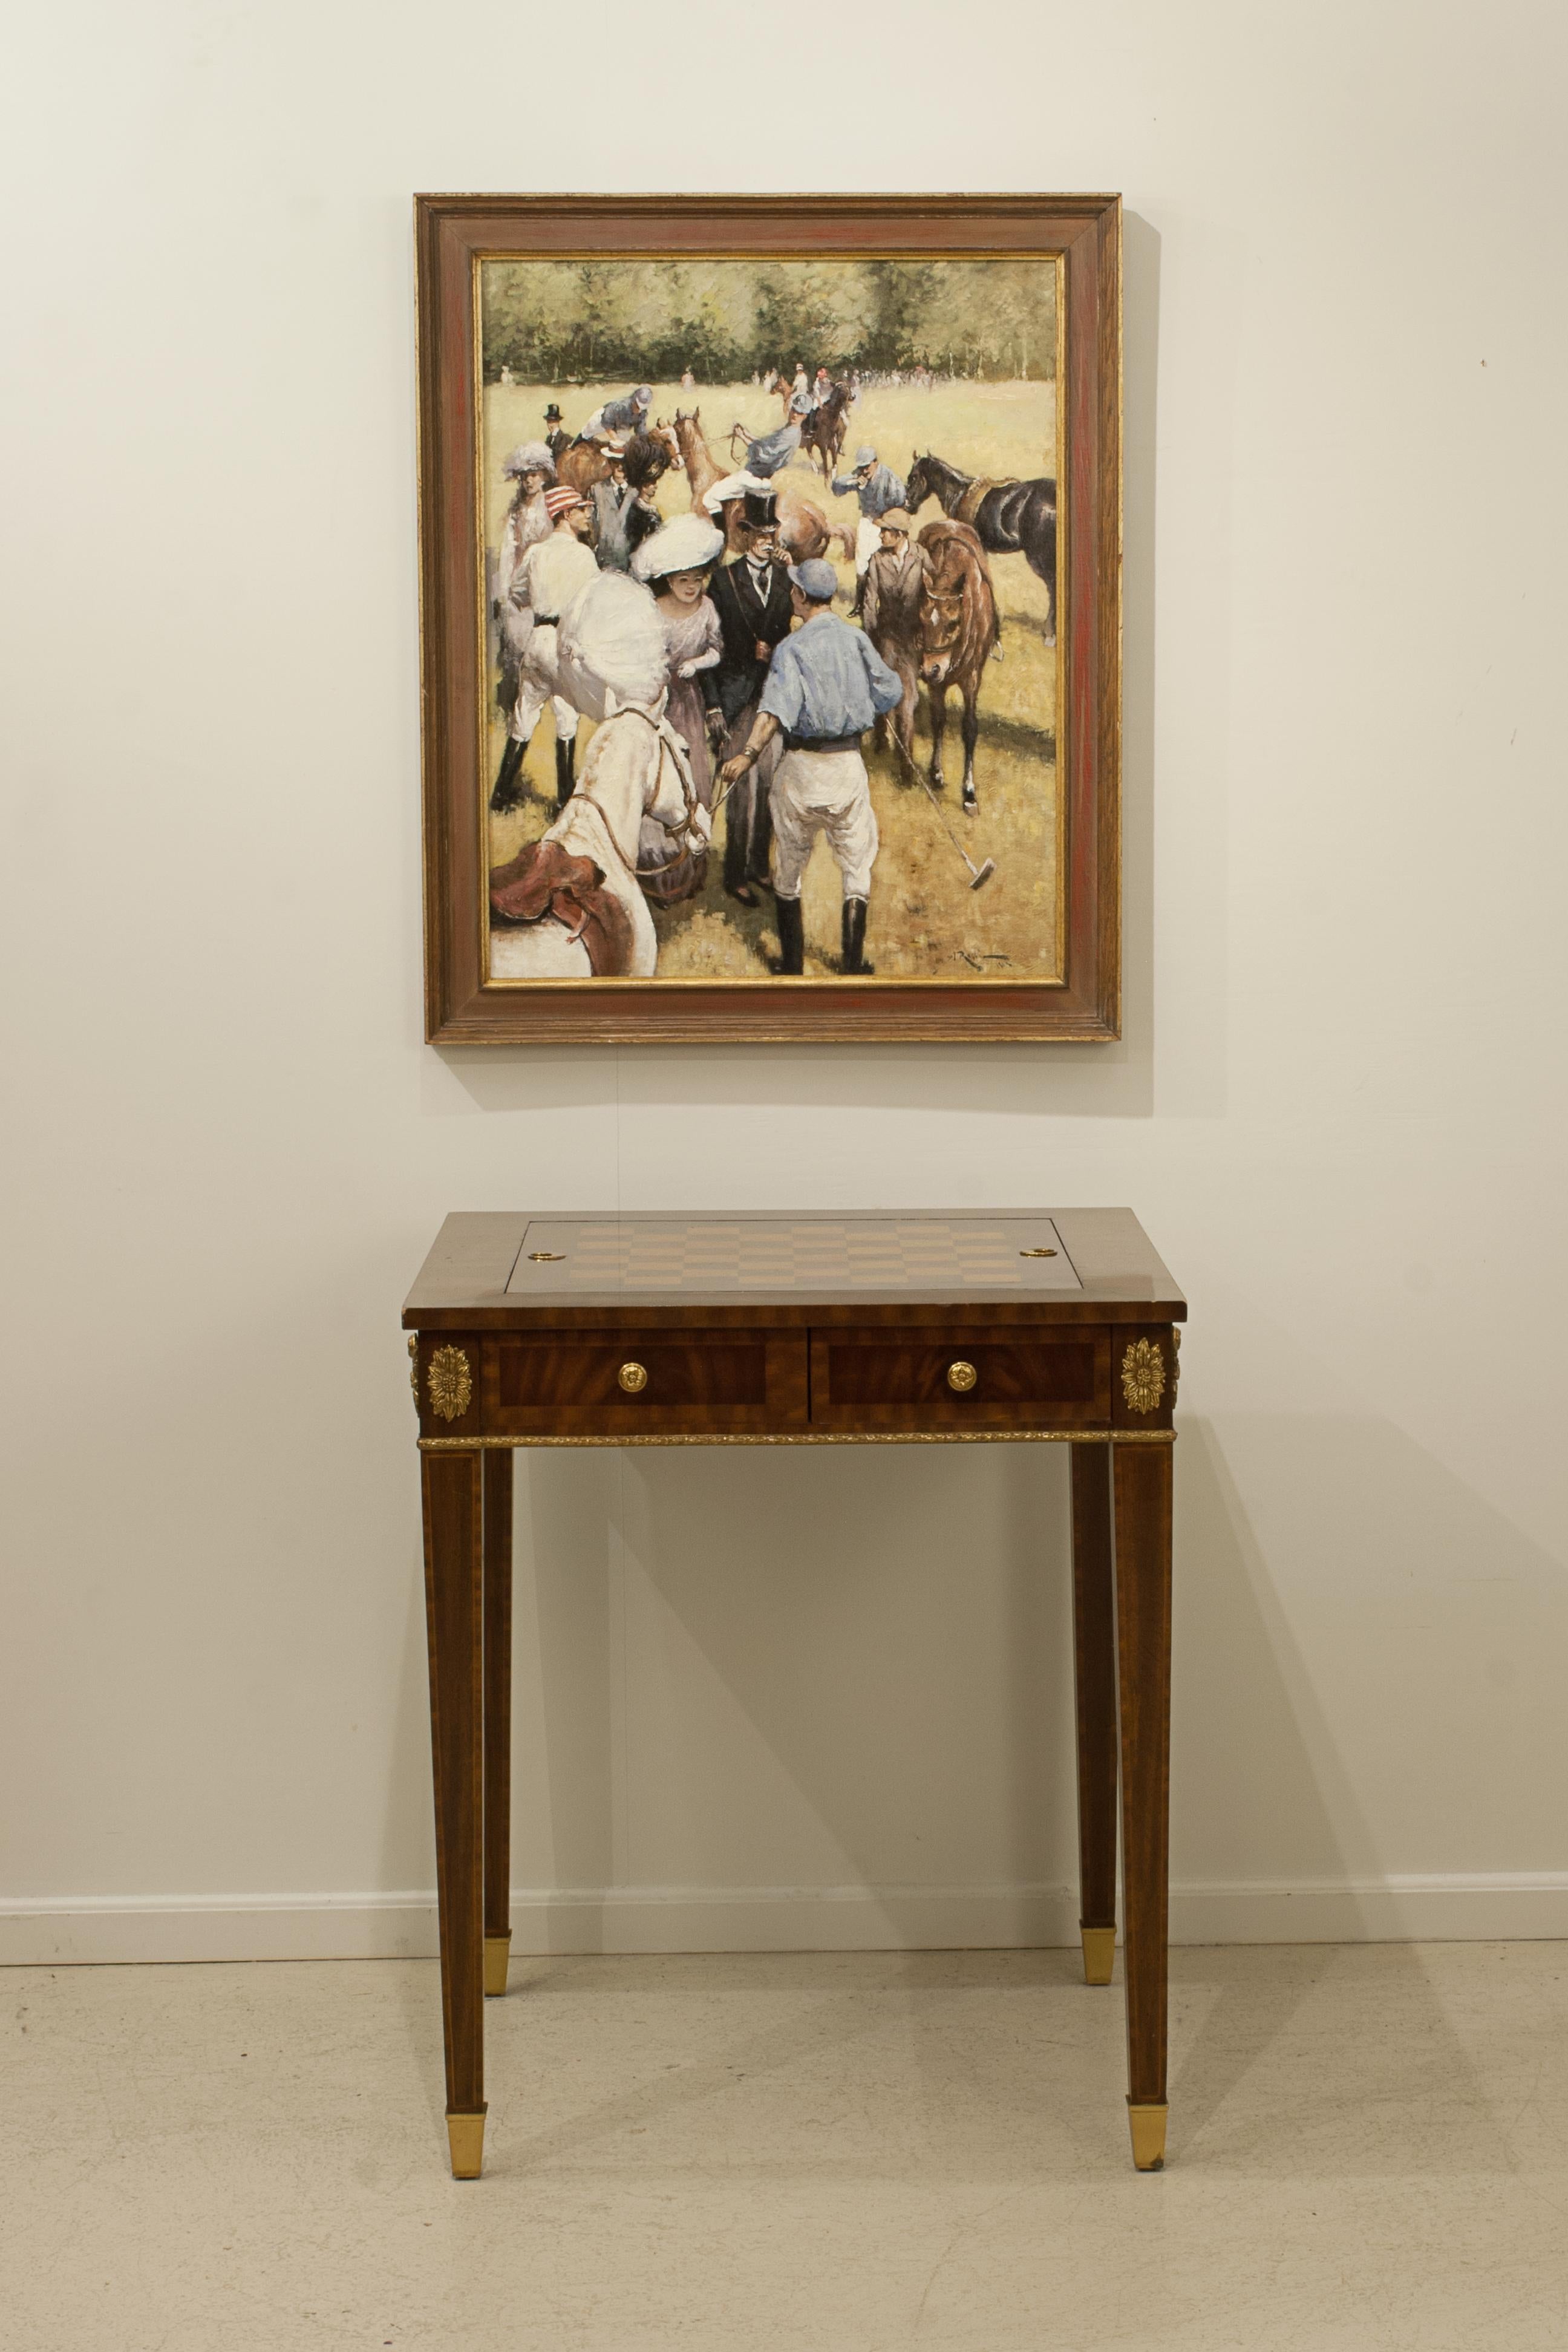 Reversible Maitland-Smith Georgian Style Mahagoni Spieltisch.
Ein reversibler Schach-, Damespiel- und Backgammon-Tisch im georgianischen Stil. Der Mahagoni-Tisch mit vier spitz zulaufenden Beinen mit Messing-Tassenfüßen, Tisch mit Messing-Akzenten